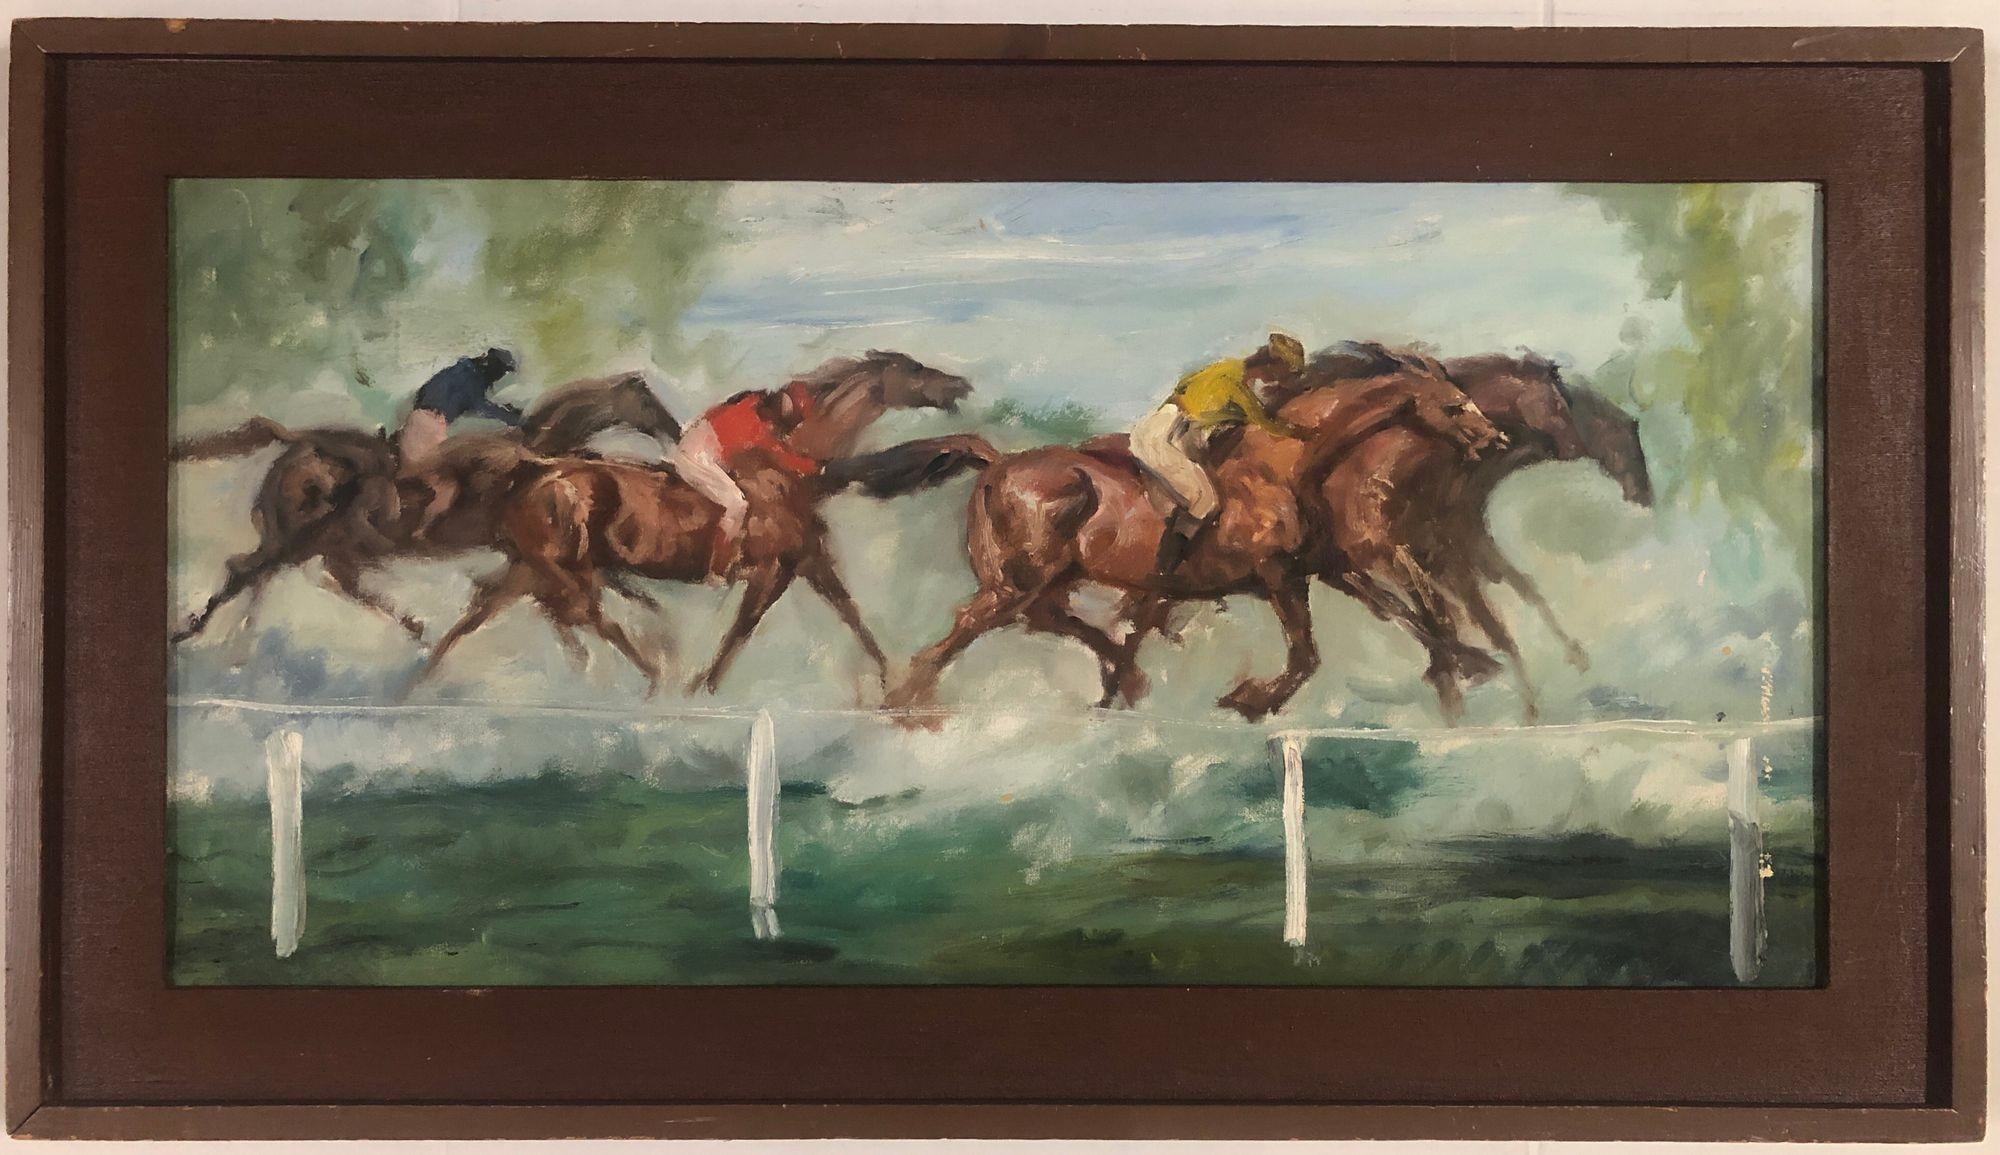 Expressionistisches Kunstwerk der Nachkriegszeit Ölgemälde einer Pferderennszene mit mehreren Jockeys im Rennen um die Ziellinie mit einem quadratischen Hartholzrahmen.

CIRCA 1960, unsigniert